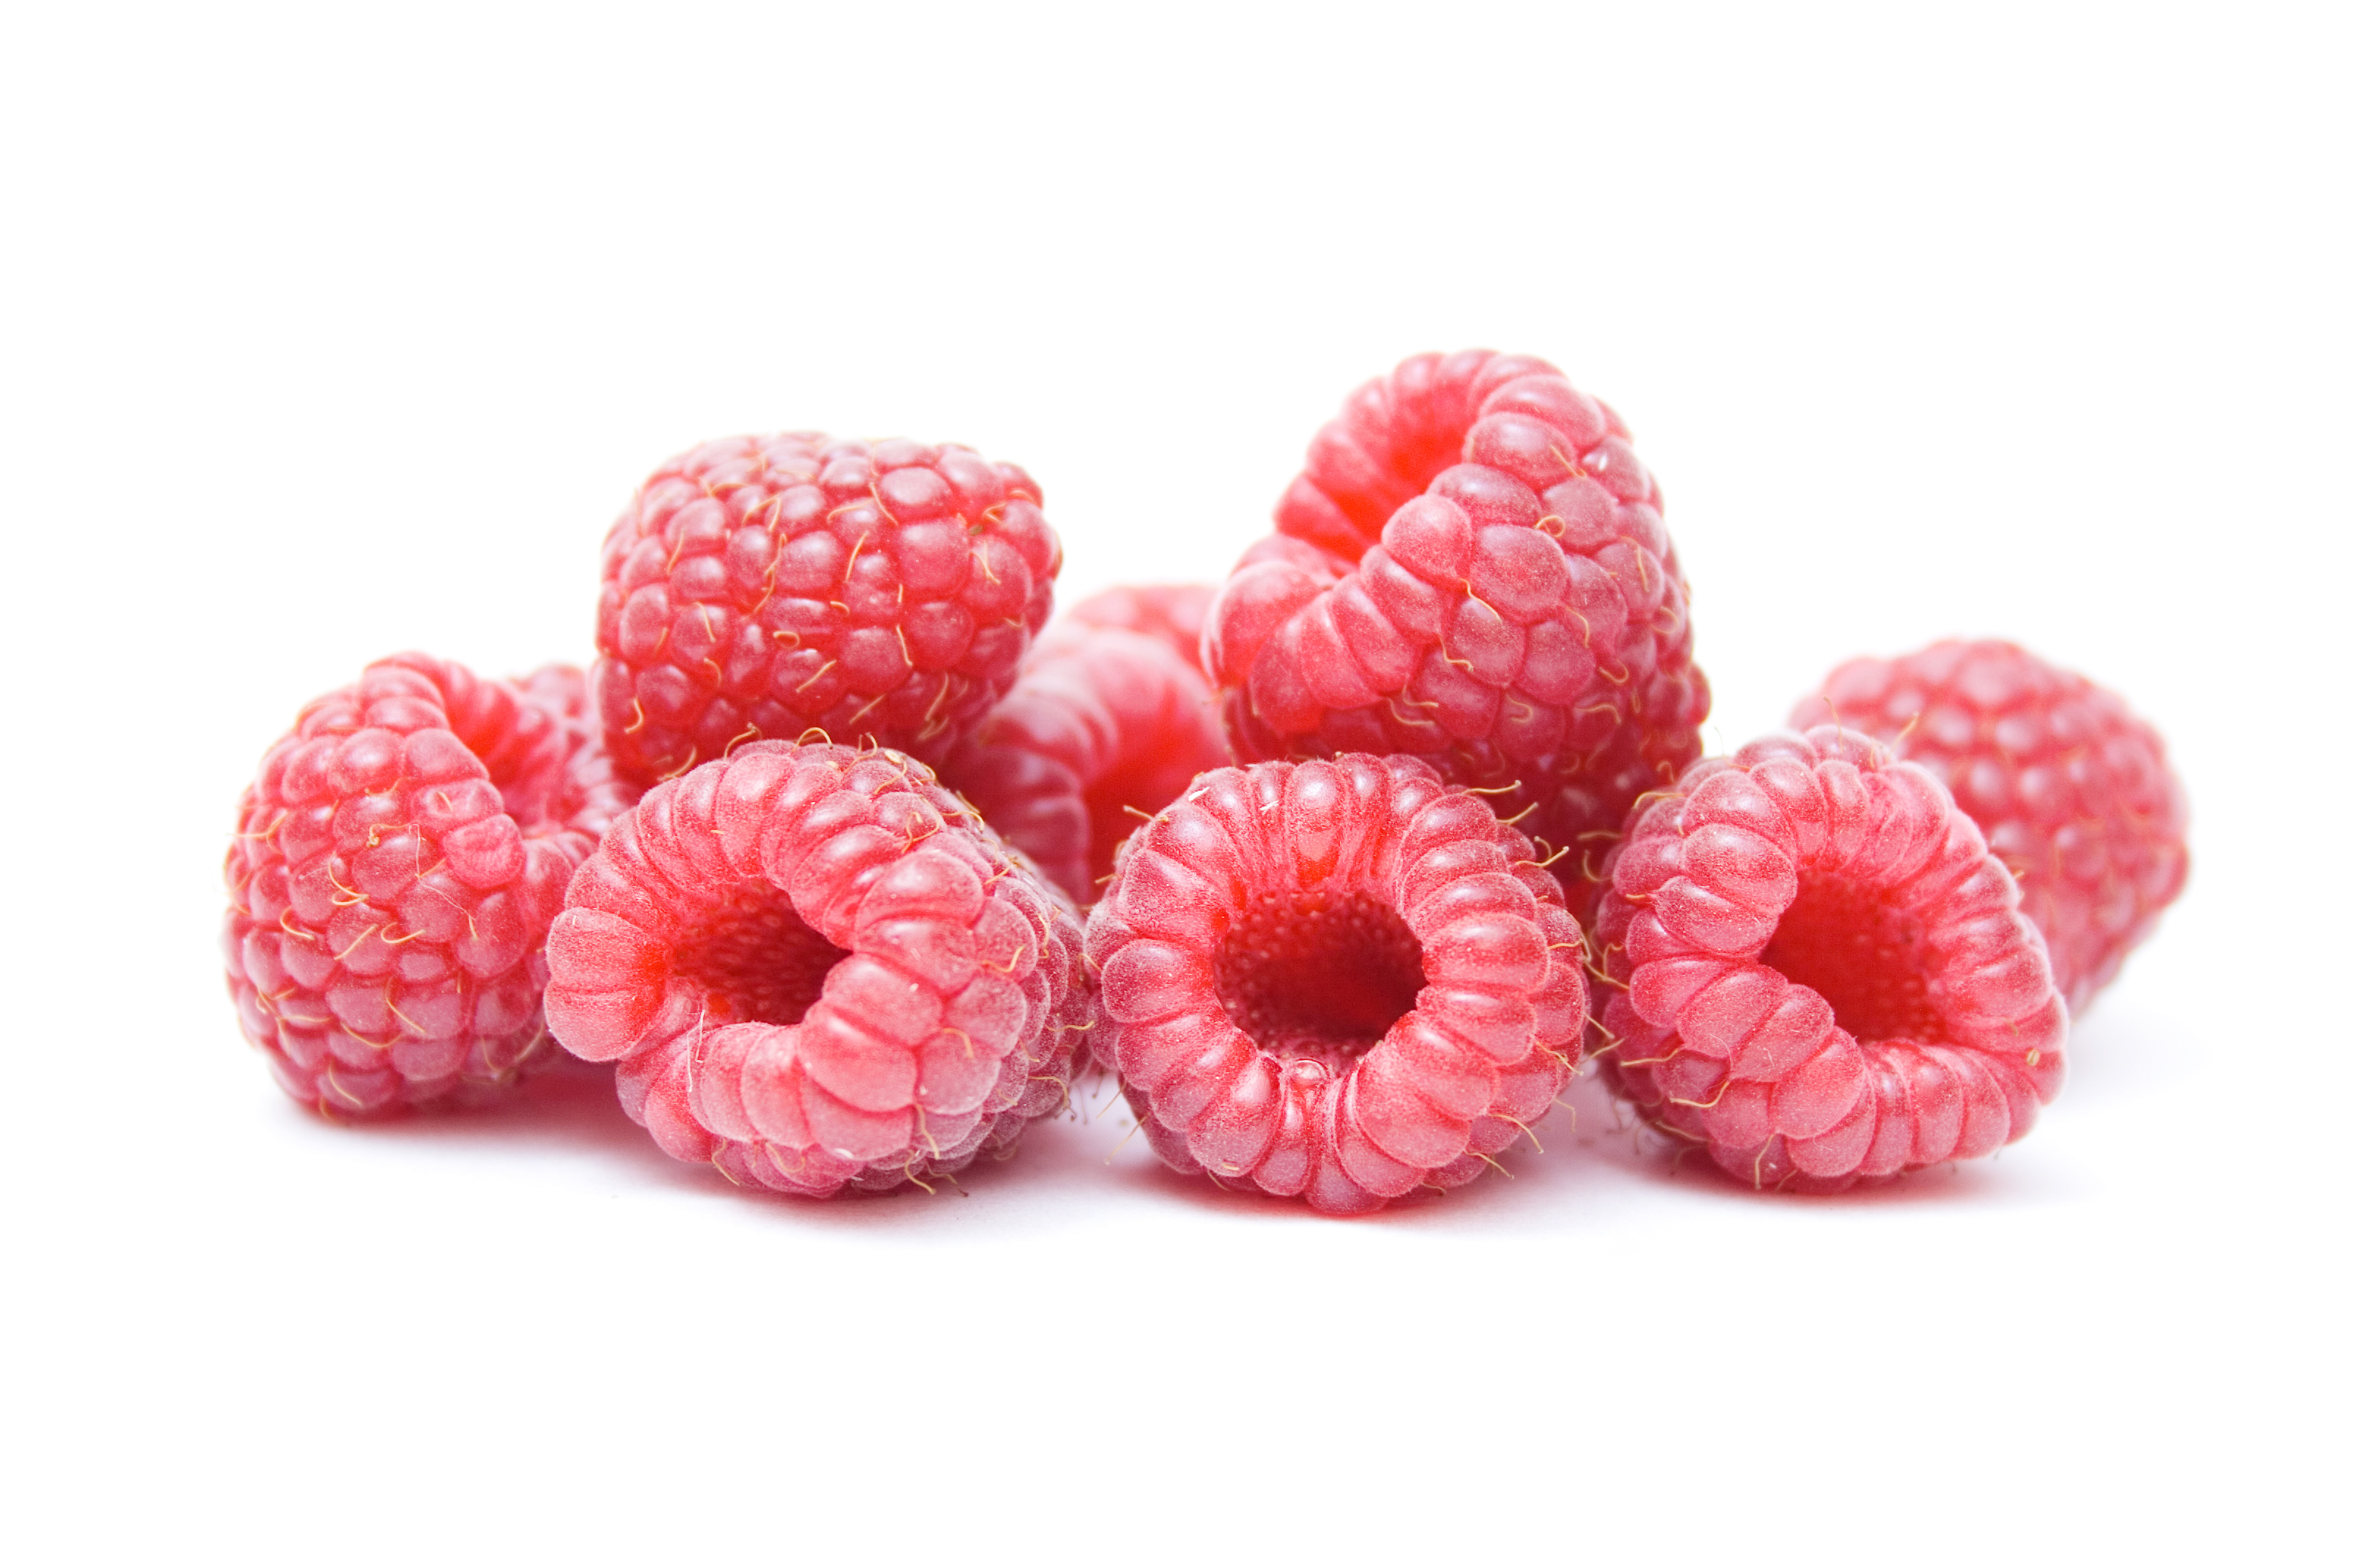 Red ripe raspberries photo